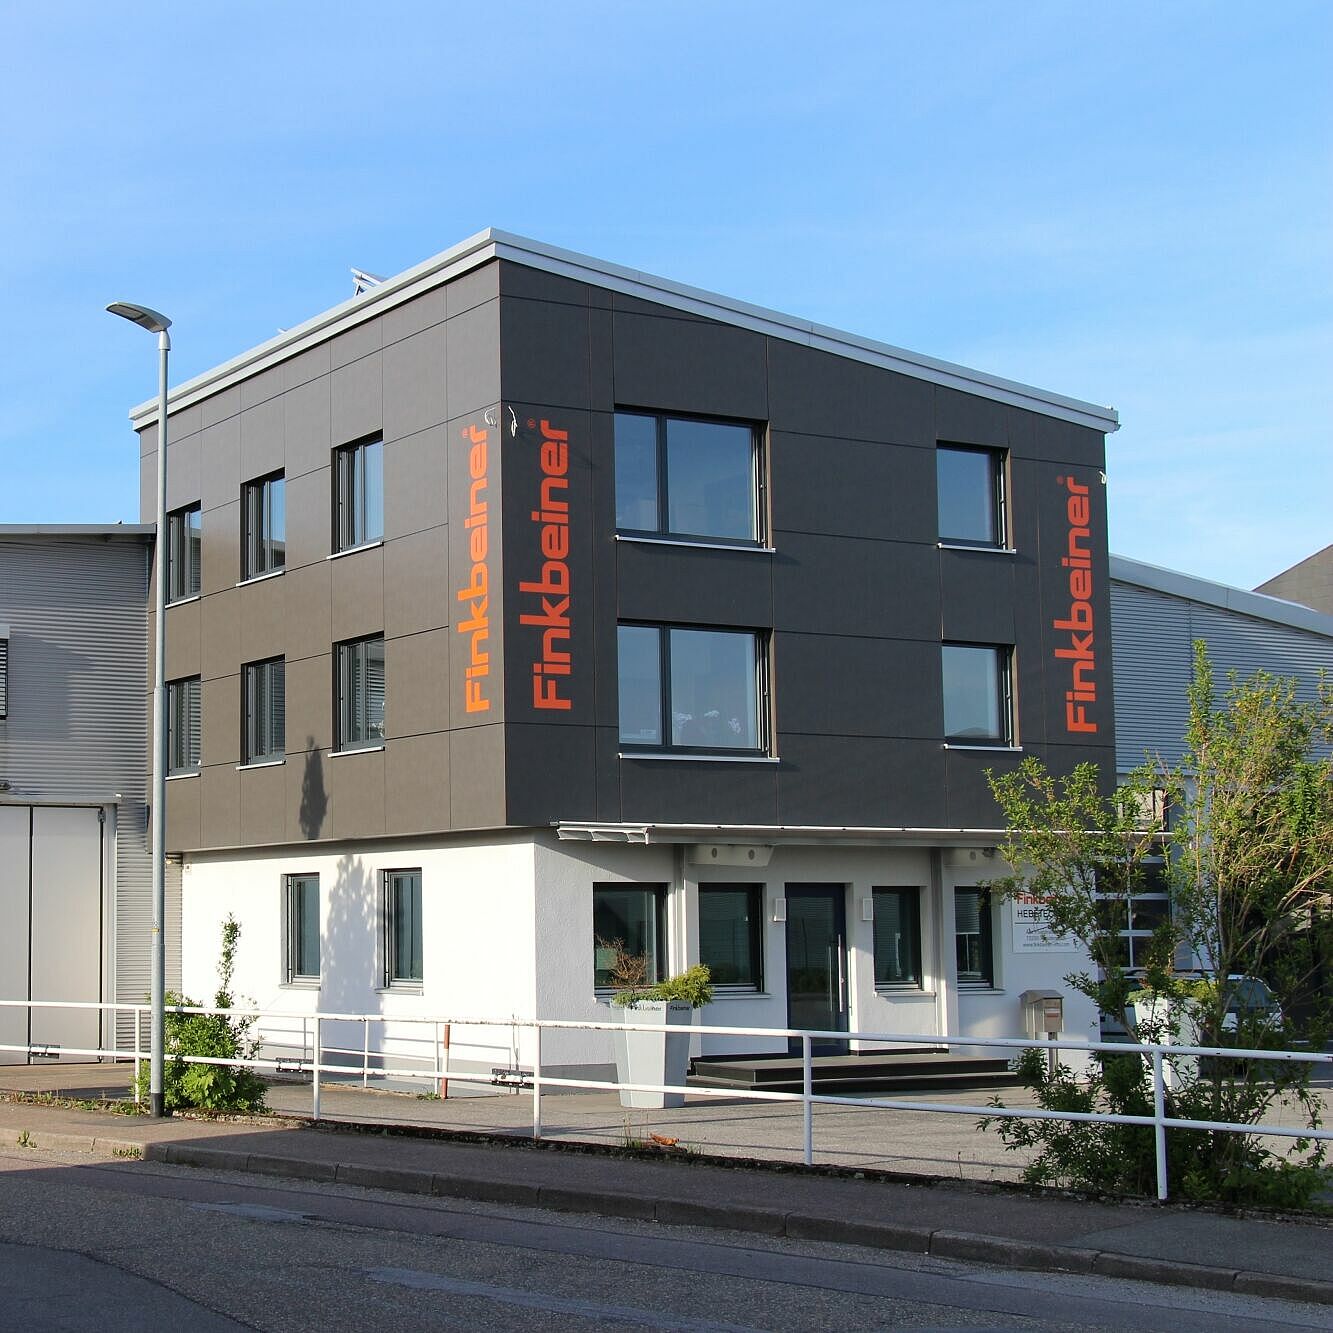 Walter Finkbeiner GmbH located in DE-72250 Freudenstadt